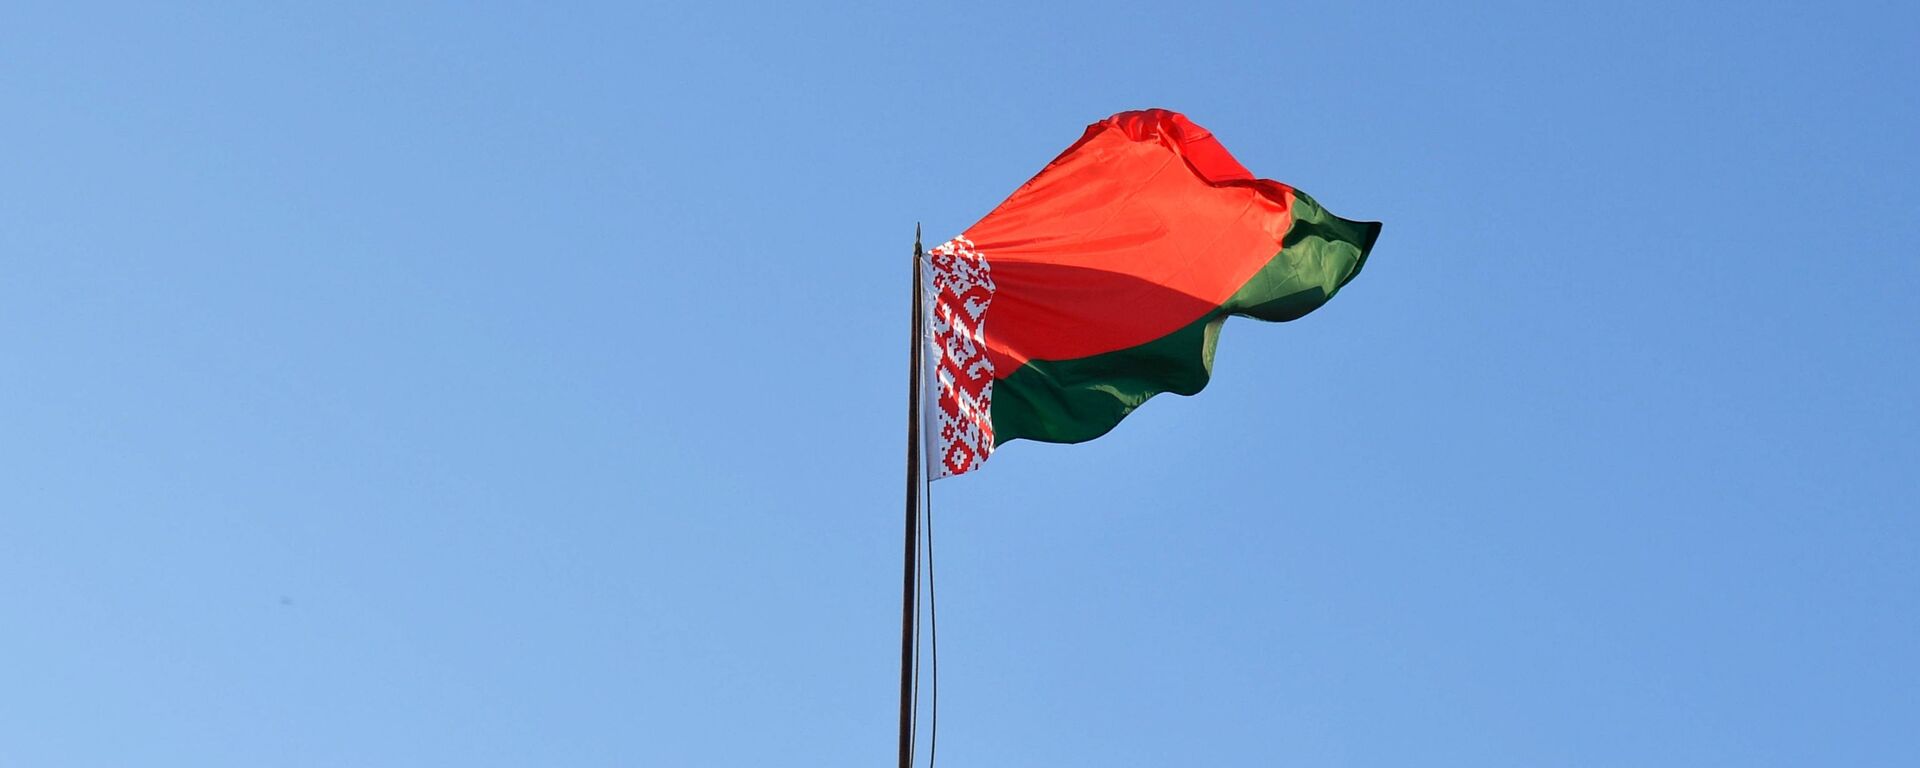 Bandera de Bielorrusia (imagen referencial) - Sputnik Mundo, 1920, 25.06.2021